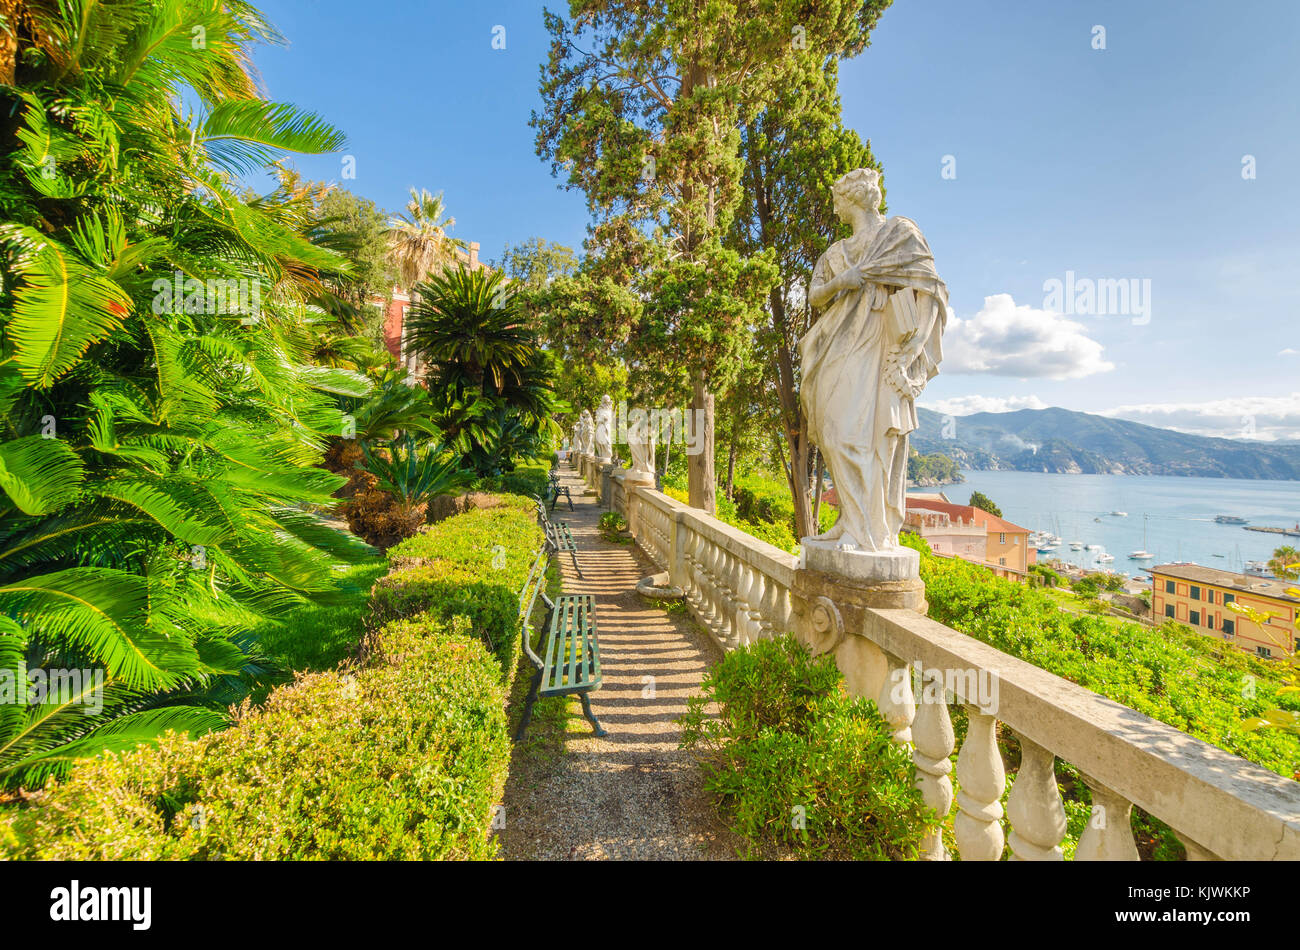 Le cadre magnifique de Villa Durazzo, donnant sur la mer Ligure Italie c Santa Banque D'Images